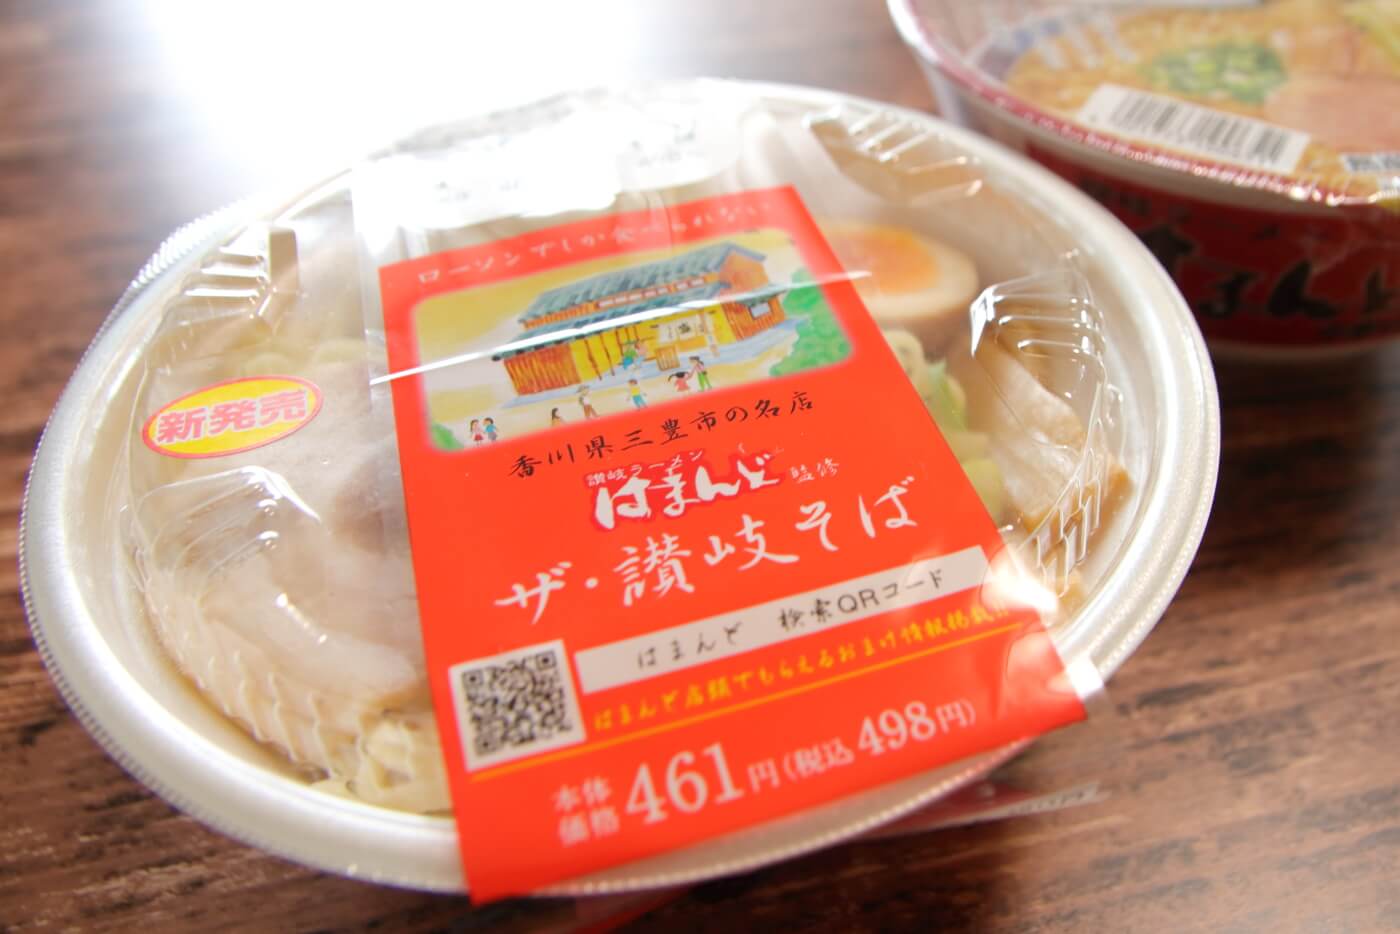 中四国のローソン限定で販売される讃岐ラーメンはまんどチルド麺